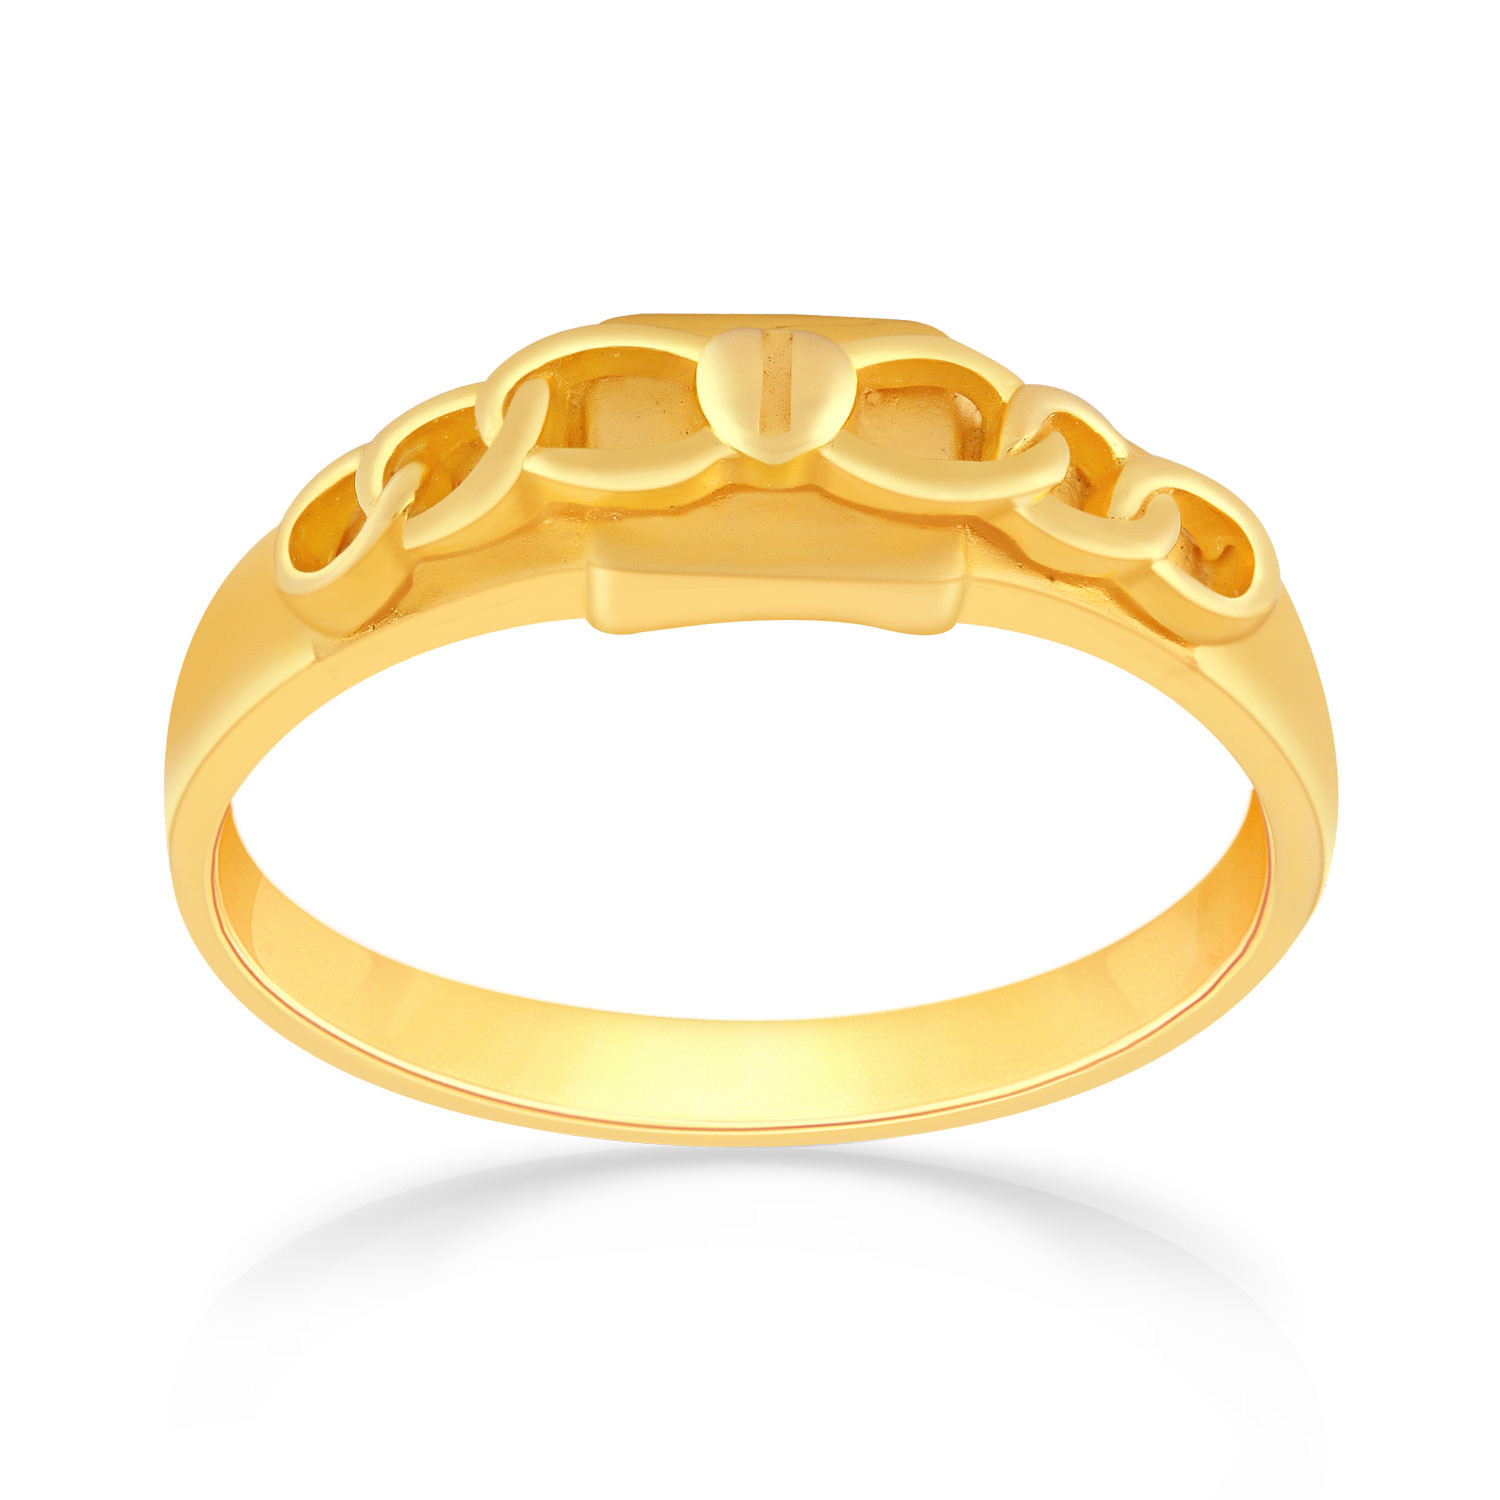 Malabar Gold Ring FRNOSKY510